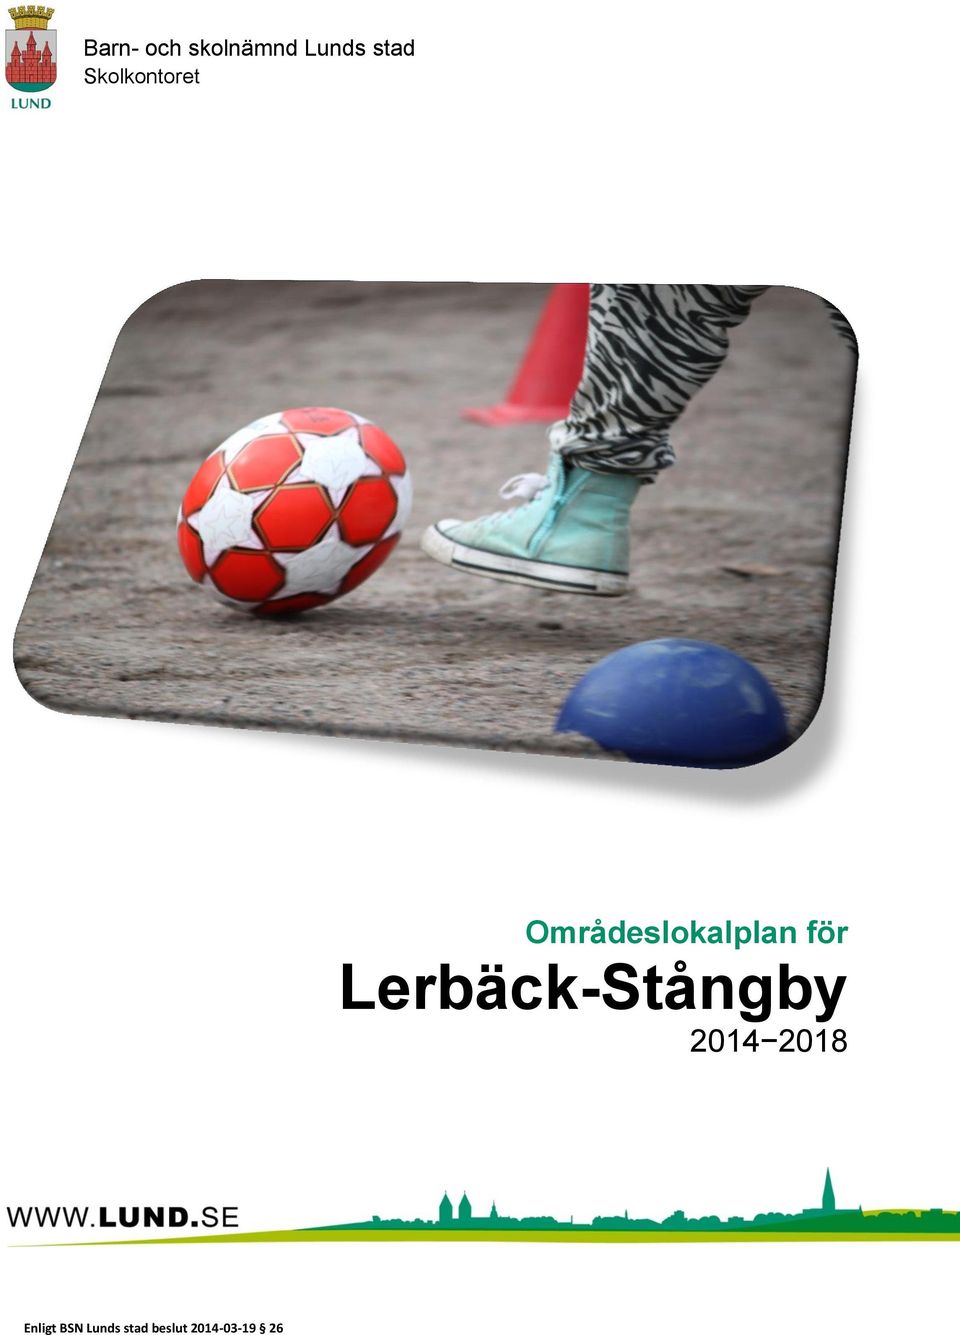 Lerbäck-Stångby 2014 2018 Enligt